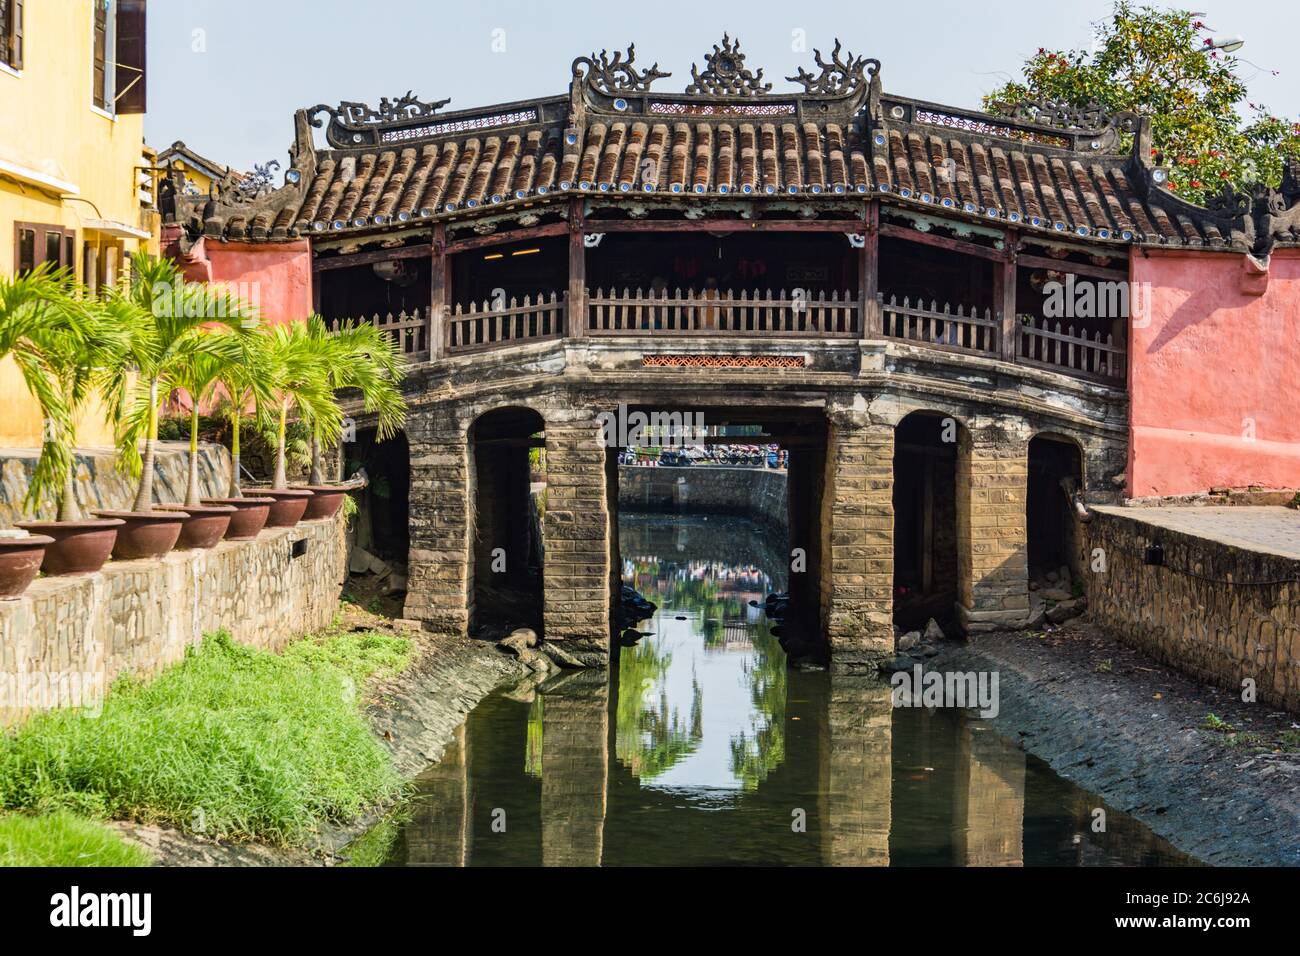 Pont couvert japonais historique emblématique traversant la rivière dans la vieille ville de Hoi an, Vietnam Banque D'Images